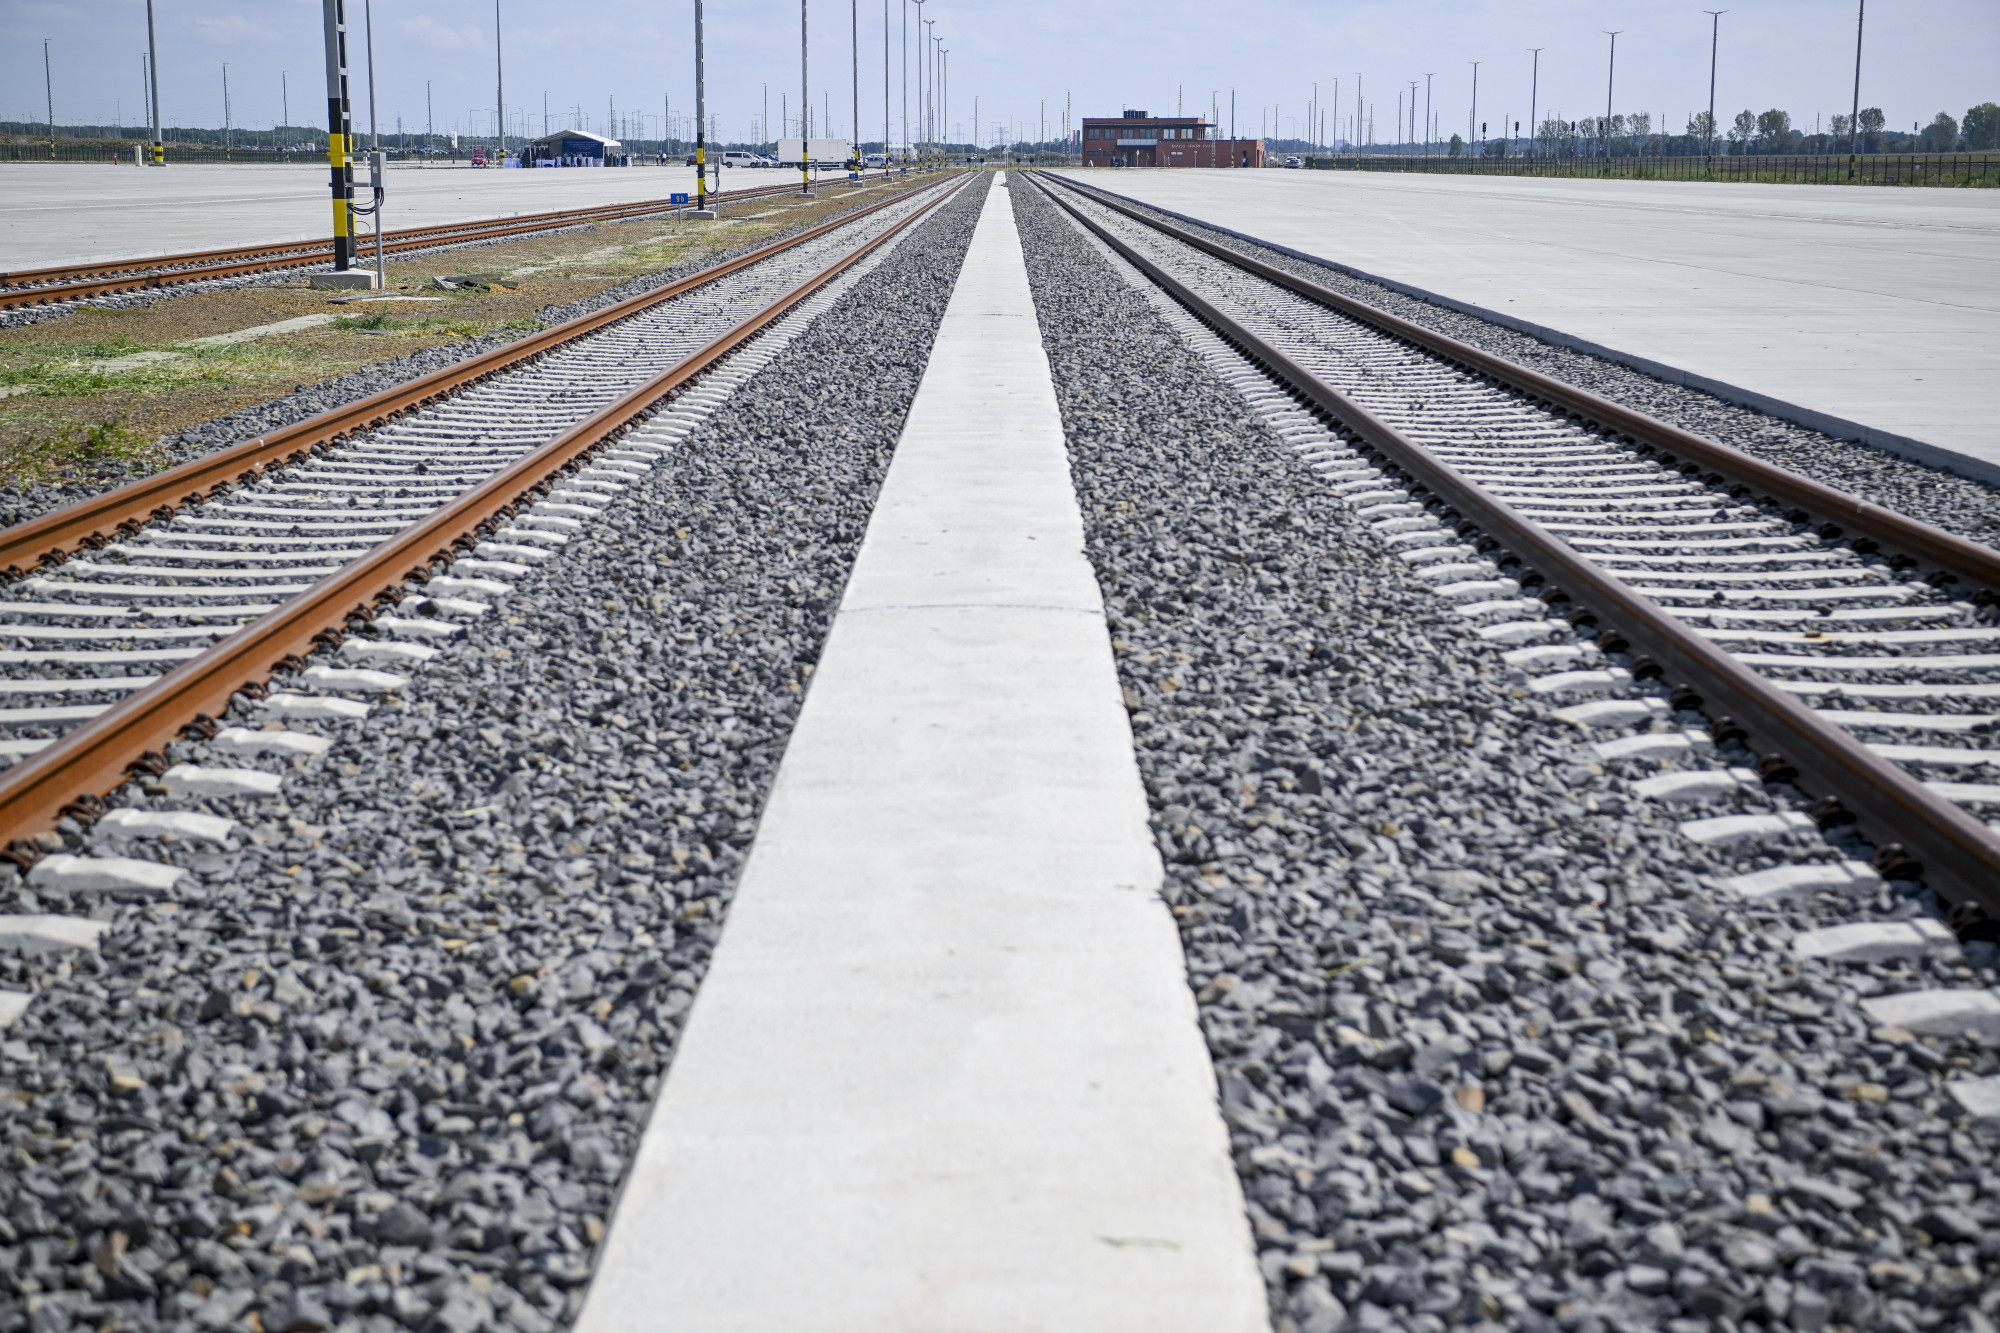 5,4 milliárddal dobták meg a Szeged-Röszke vasútvonal eddig is 45 milliárdos költségvetését